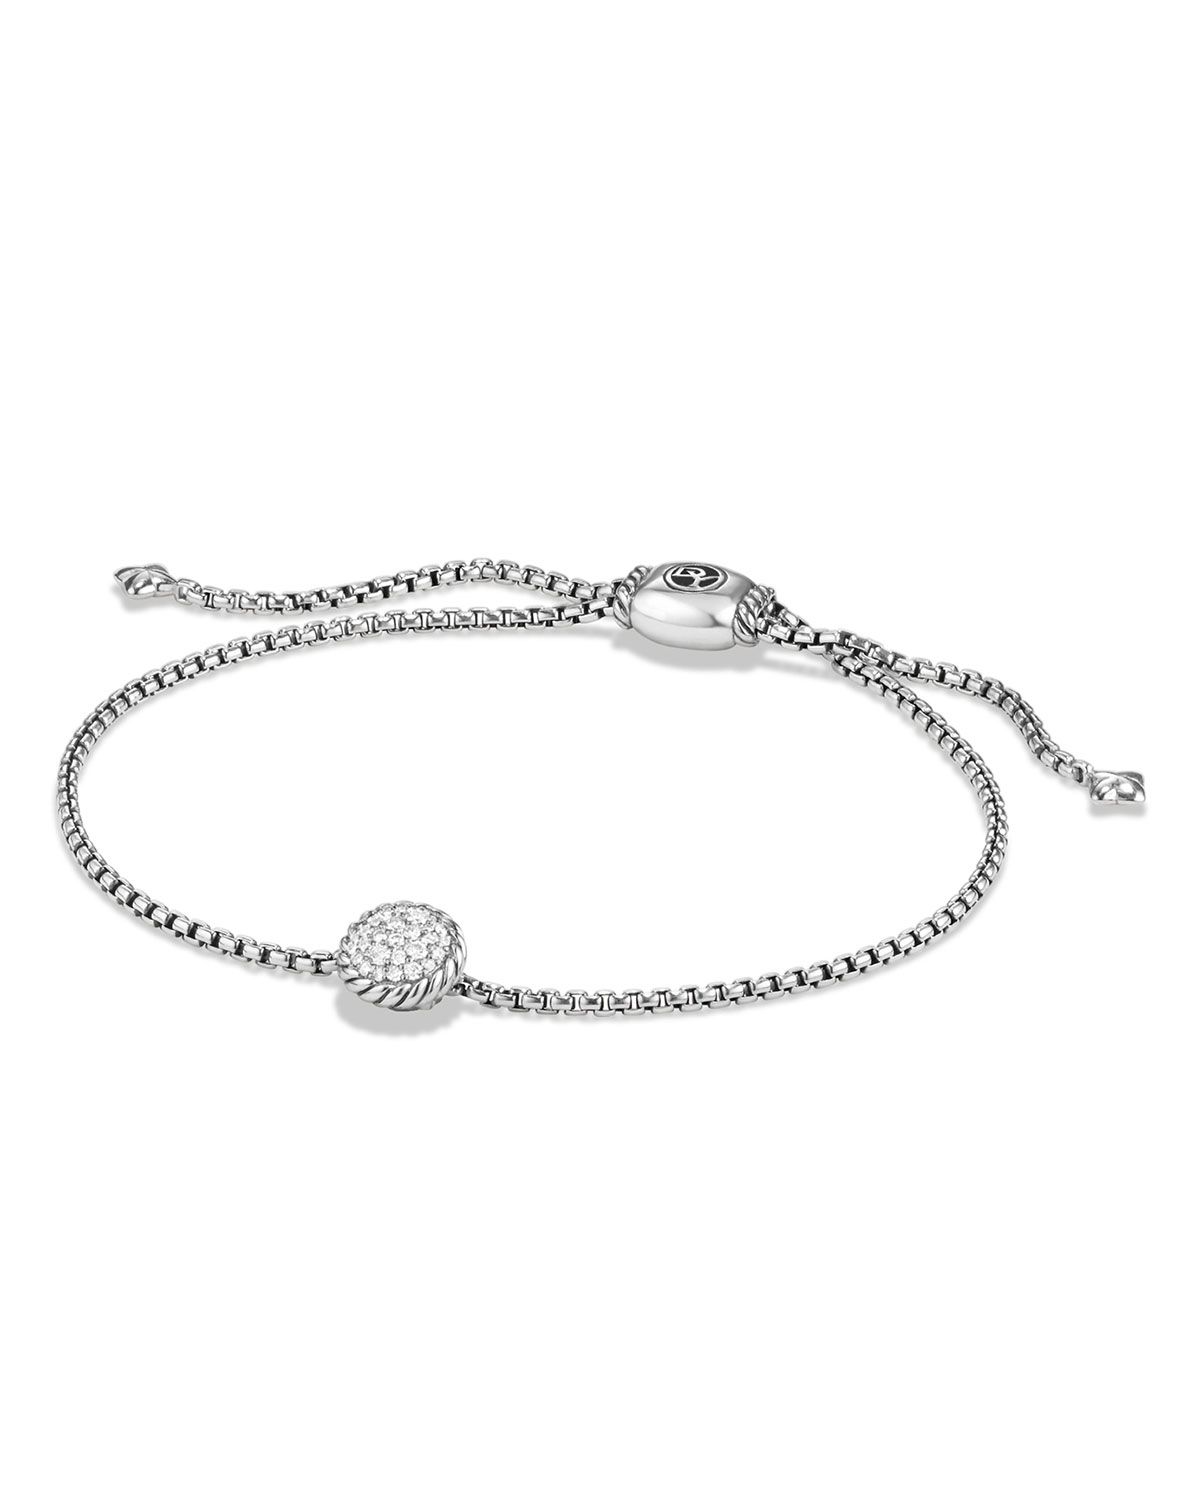 Petite Châtelaine Bracelet with Diamonds | Neiman Marcus